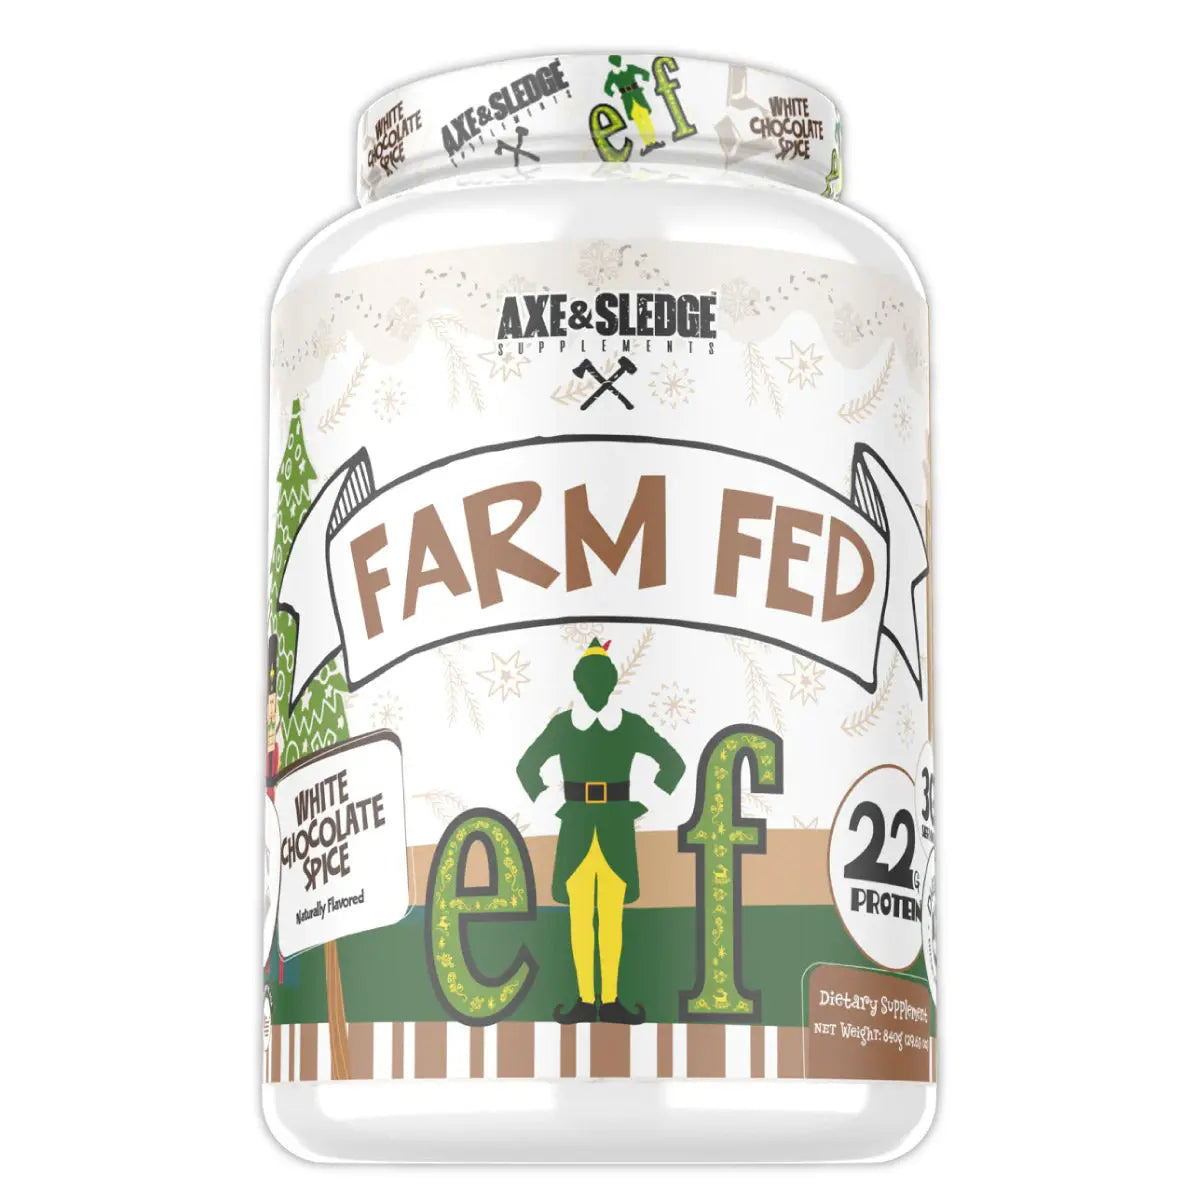 FARM FED Axe & Sledge